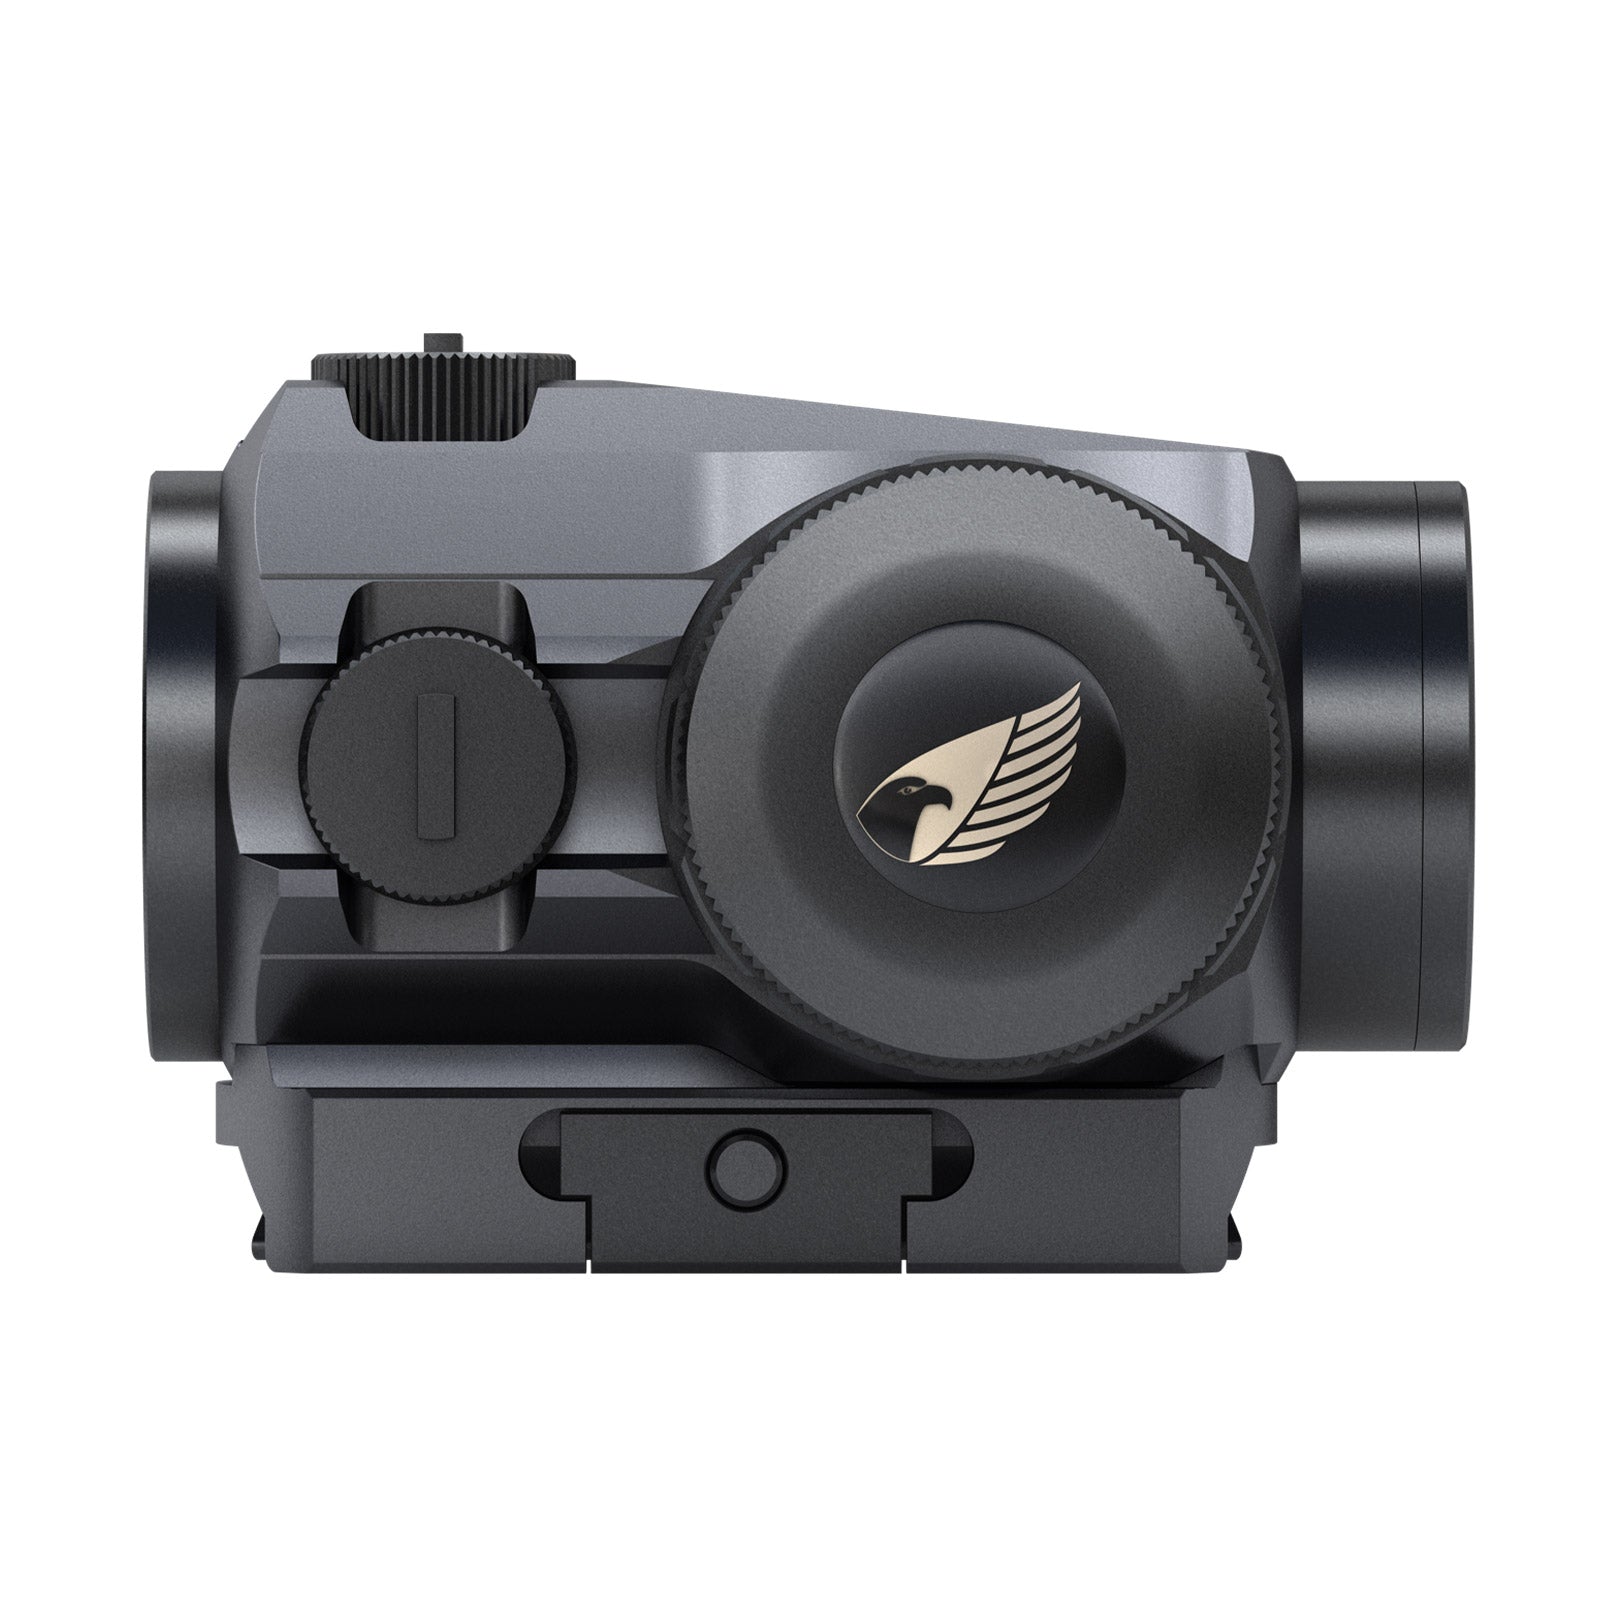 Es handelt sich hier um GPO Spectra™ Dot 1x20 Wärmebildkamera / Nachtsichtgerät für die Jagd.